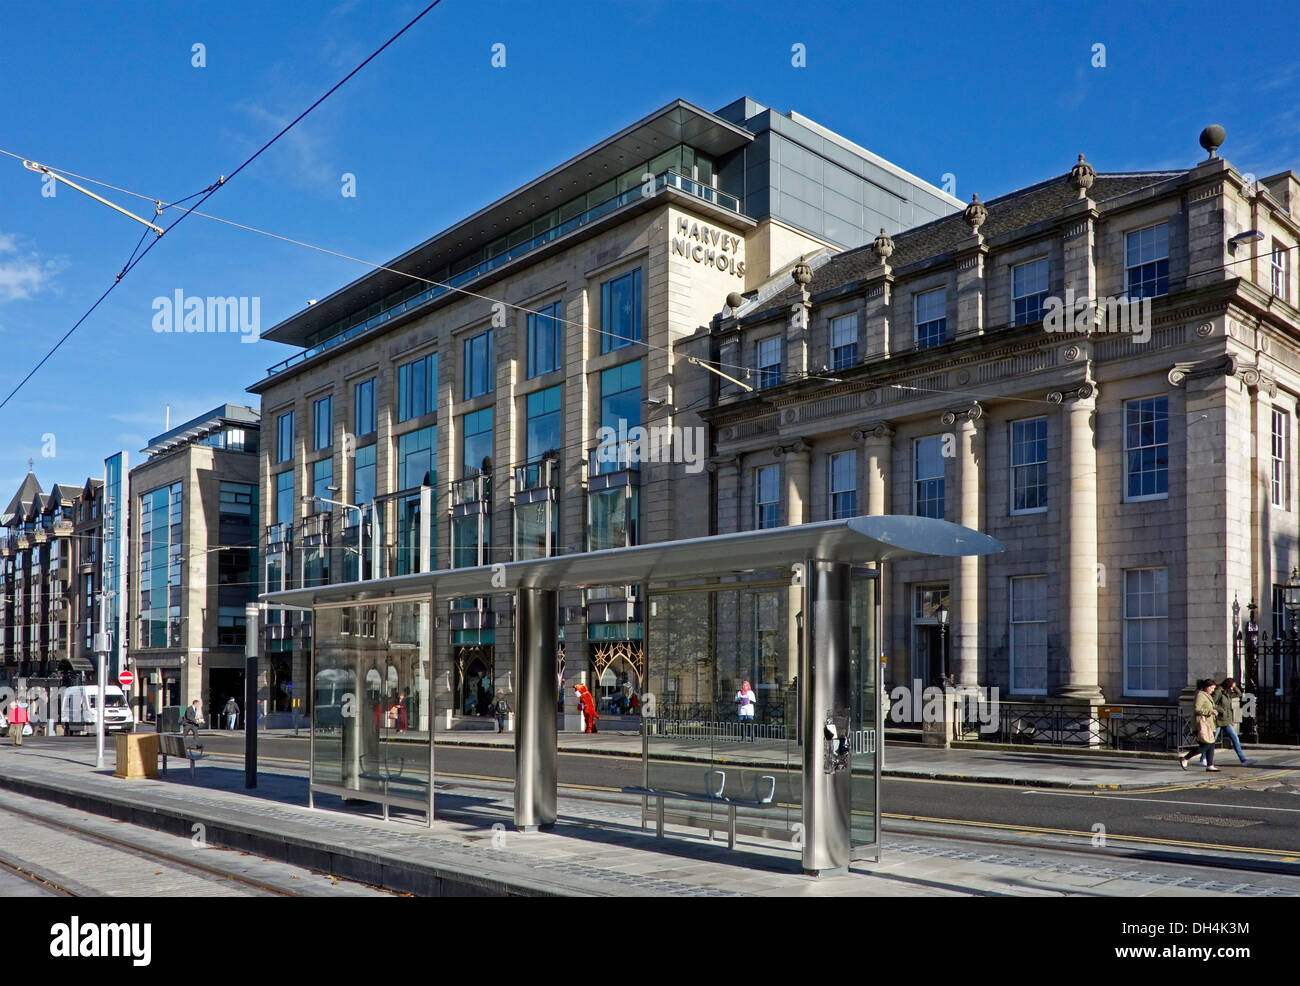 Gerade fertiggestellte Straßenbahn-Haltestelle am St. Andrew Square in zentralen Edinburgh Schottland mit Harvey Nichols Store hinter. Stockfoto